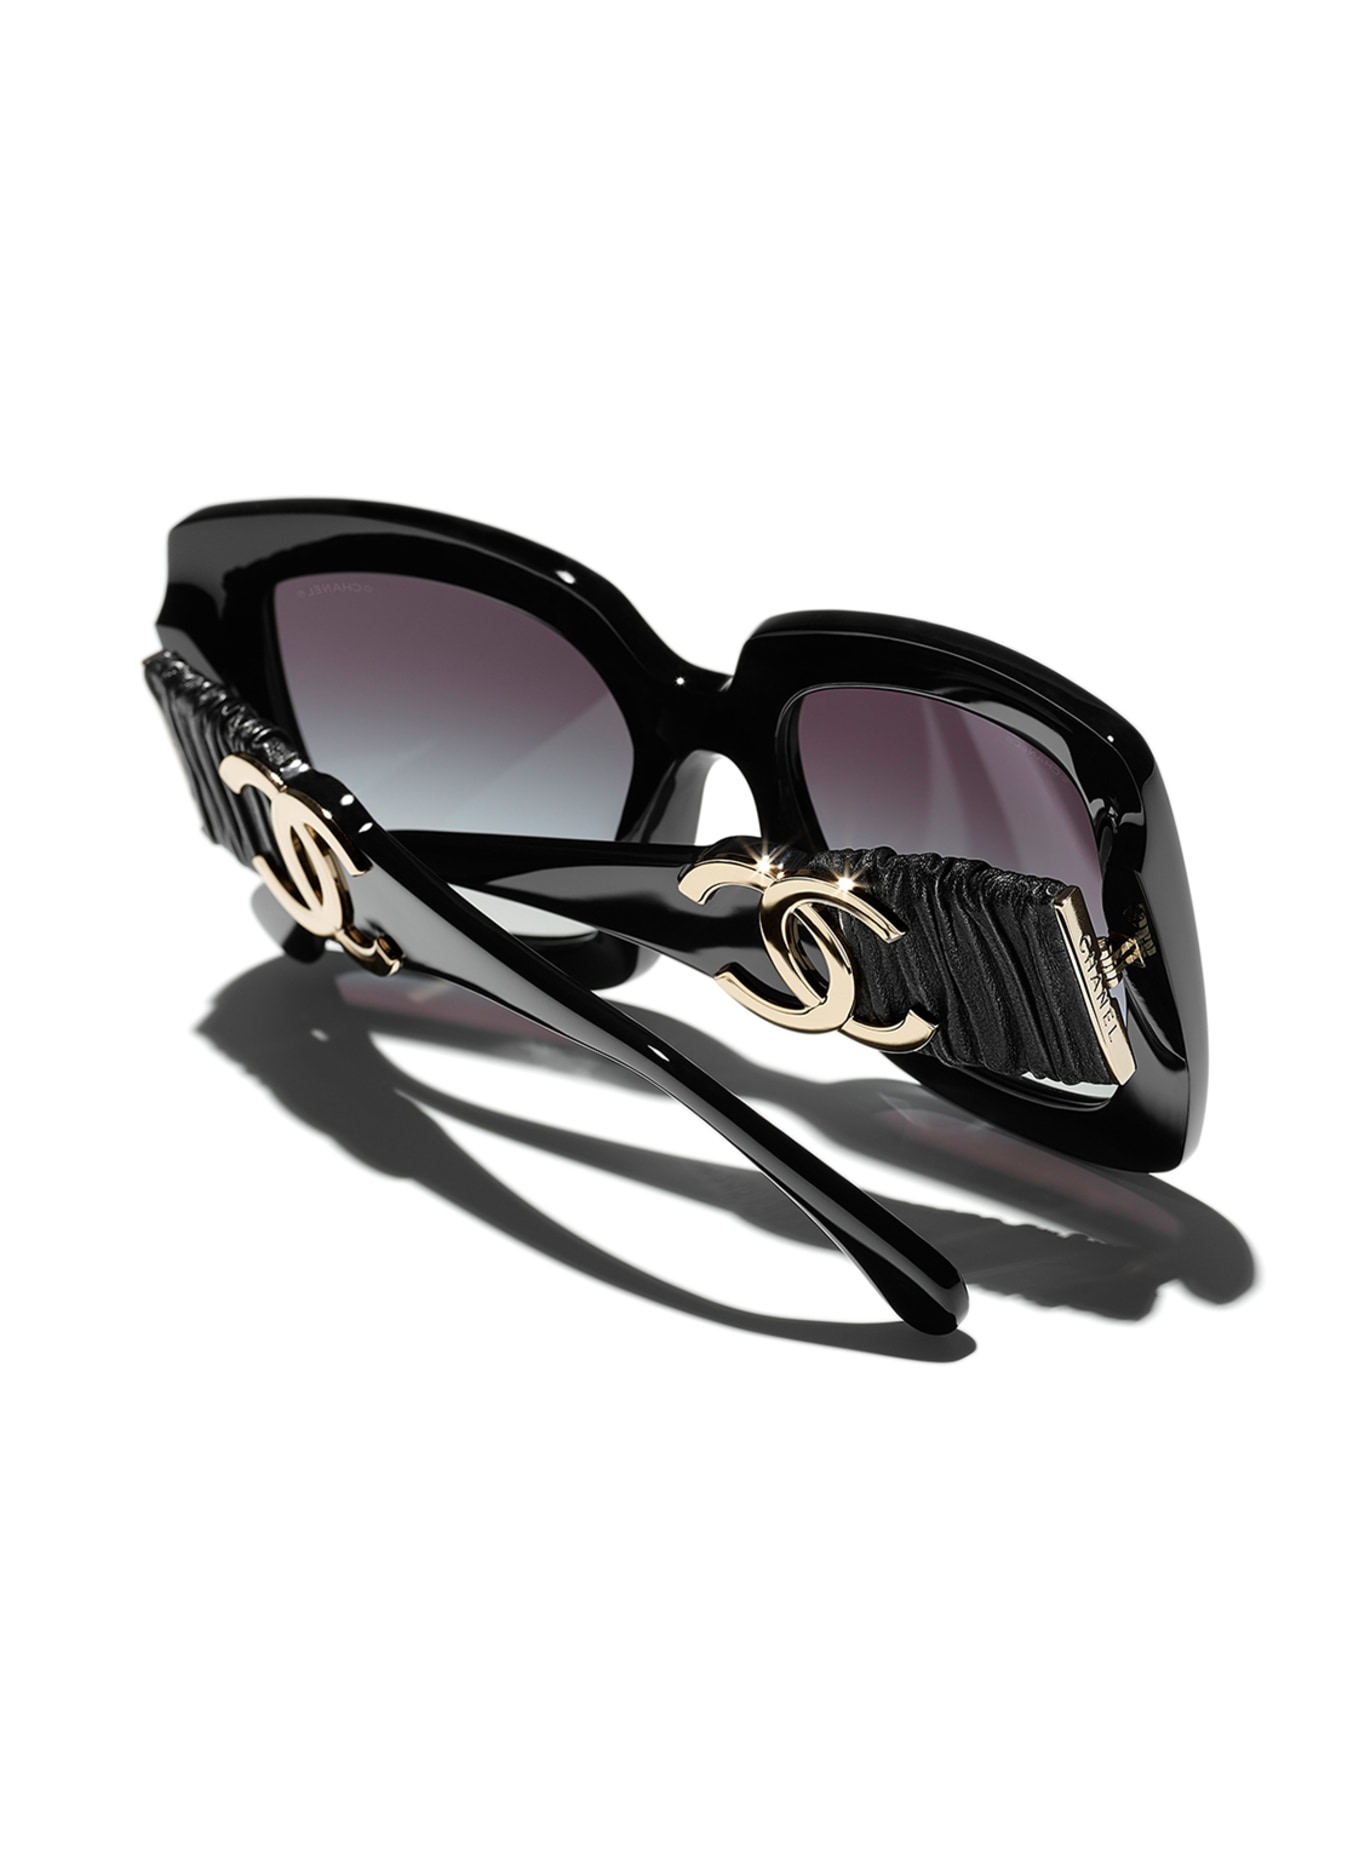 CHANEL Square sunglasses in c622s6 - black/ gray gradient